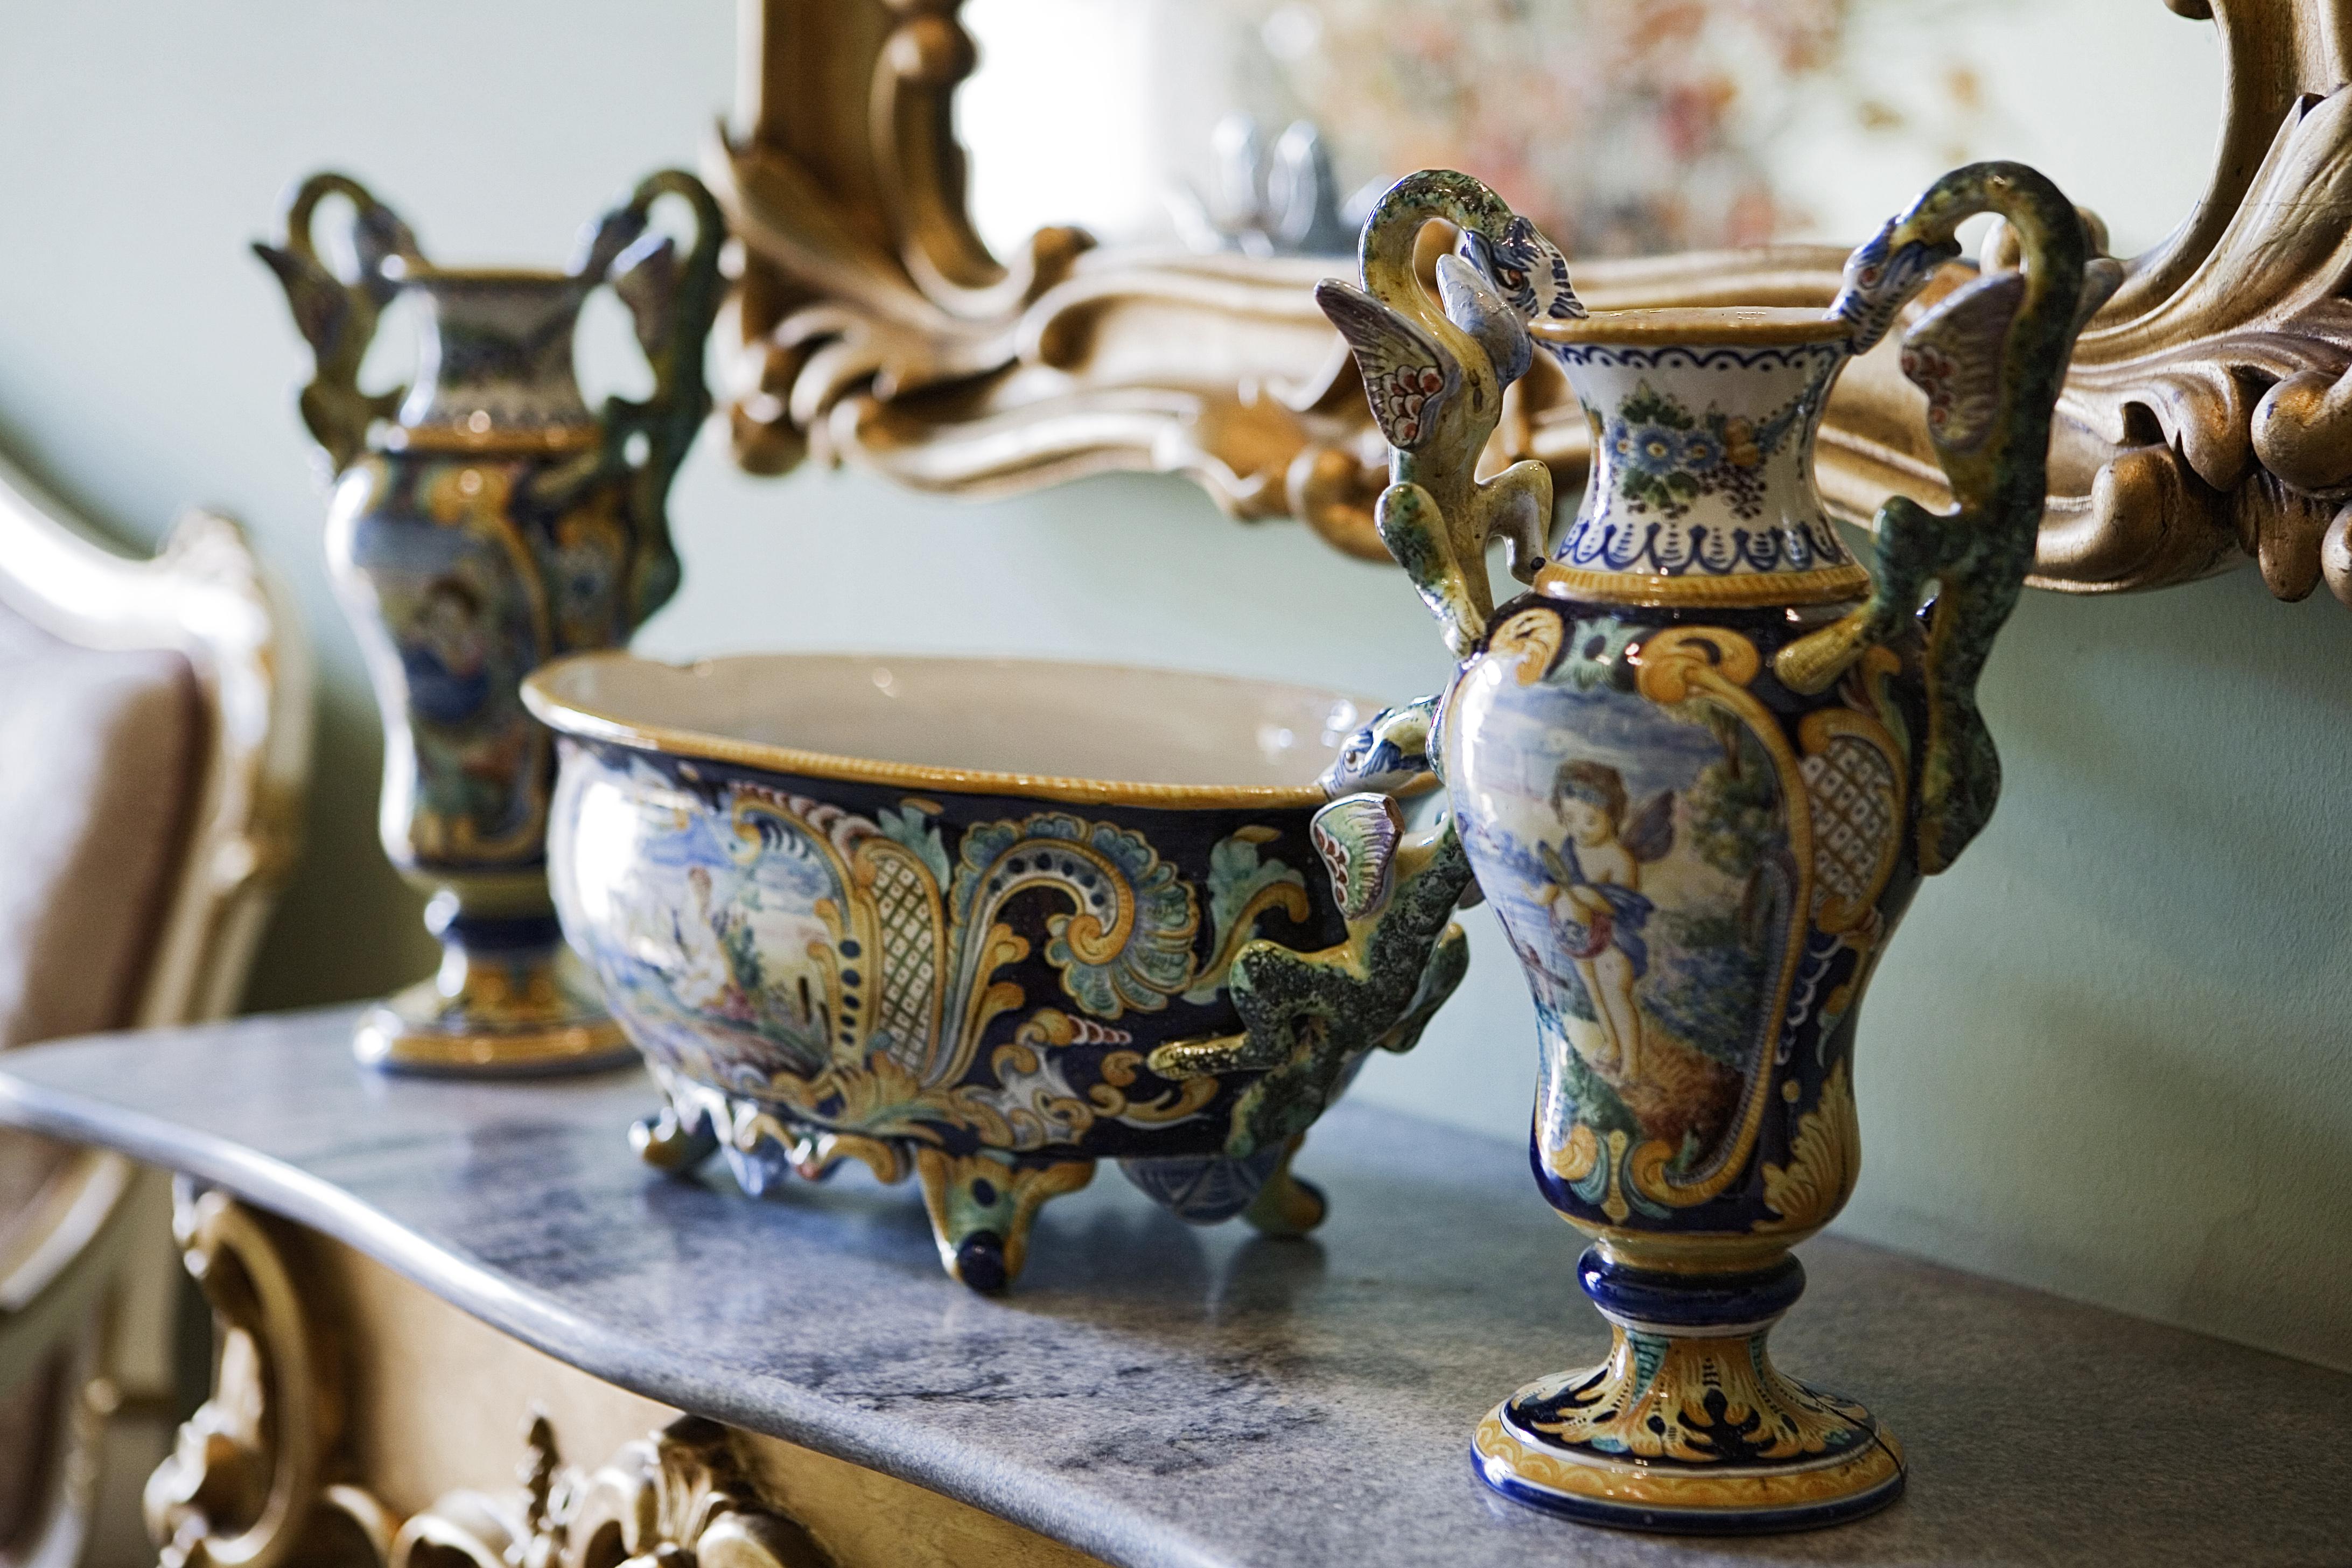 Widok bogato zdobionych wazonów ceramicznych z uchwytami w kształcie smoków w dominujących w kolorach złotym i niebieskim, na kamiennej półce pod lustrem w rzeźbionej ramie.